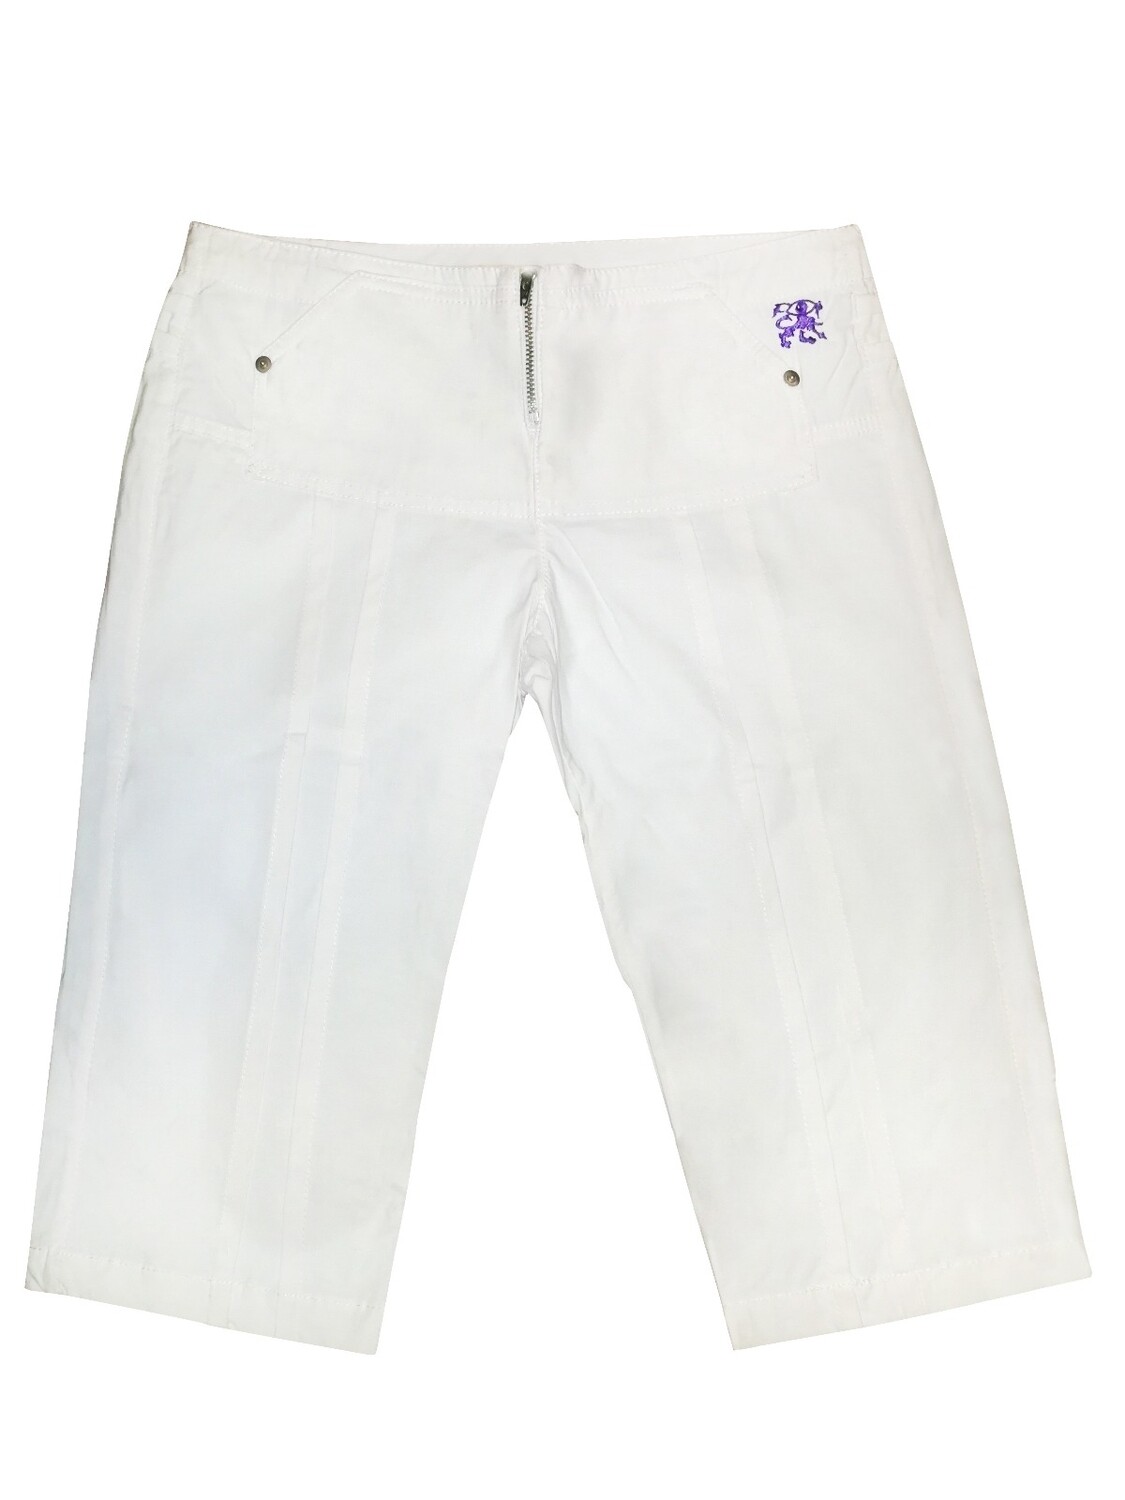 White Indie summer pants